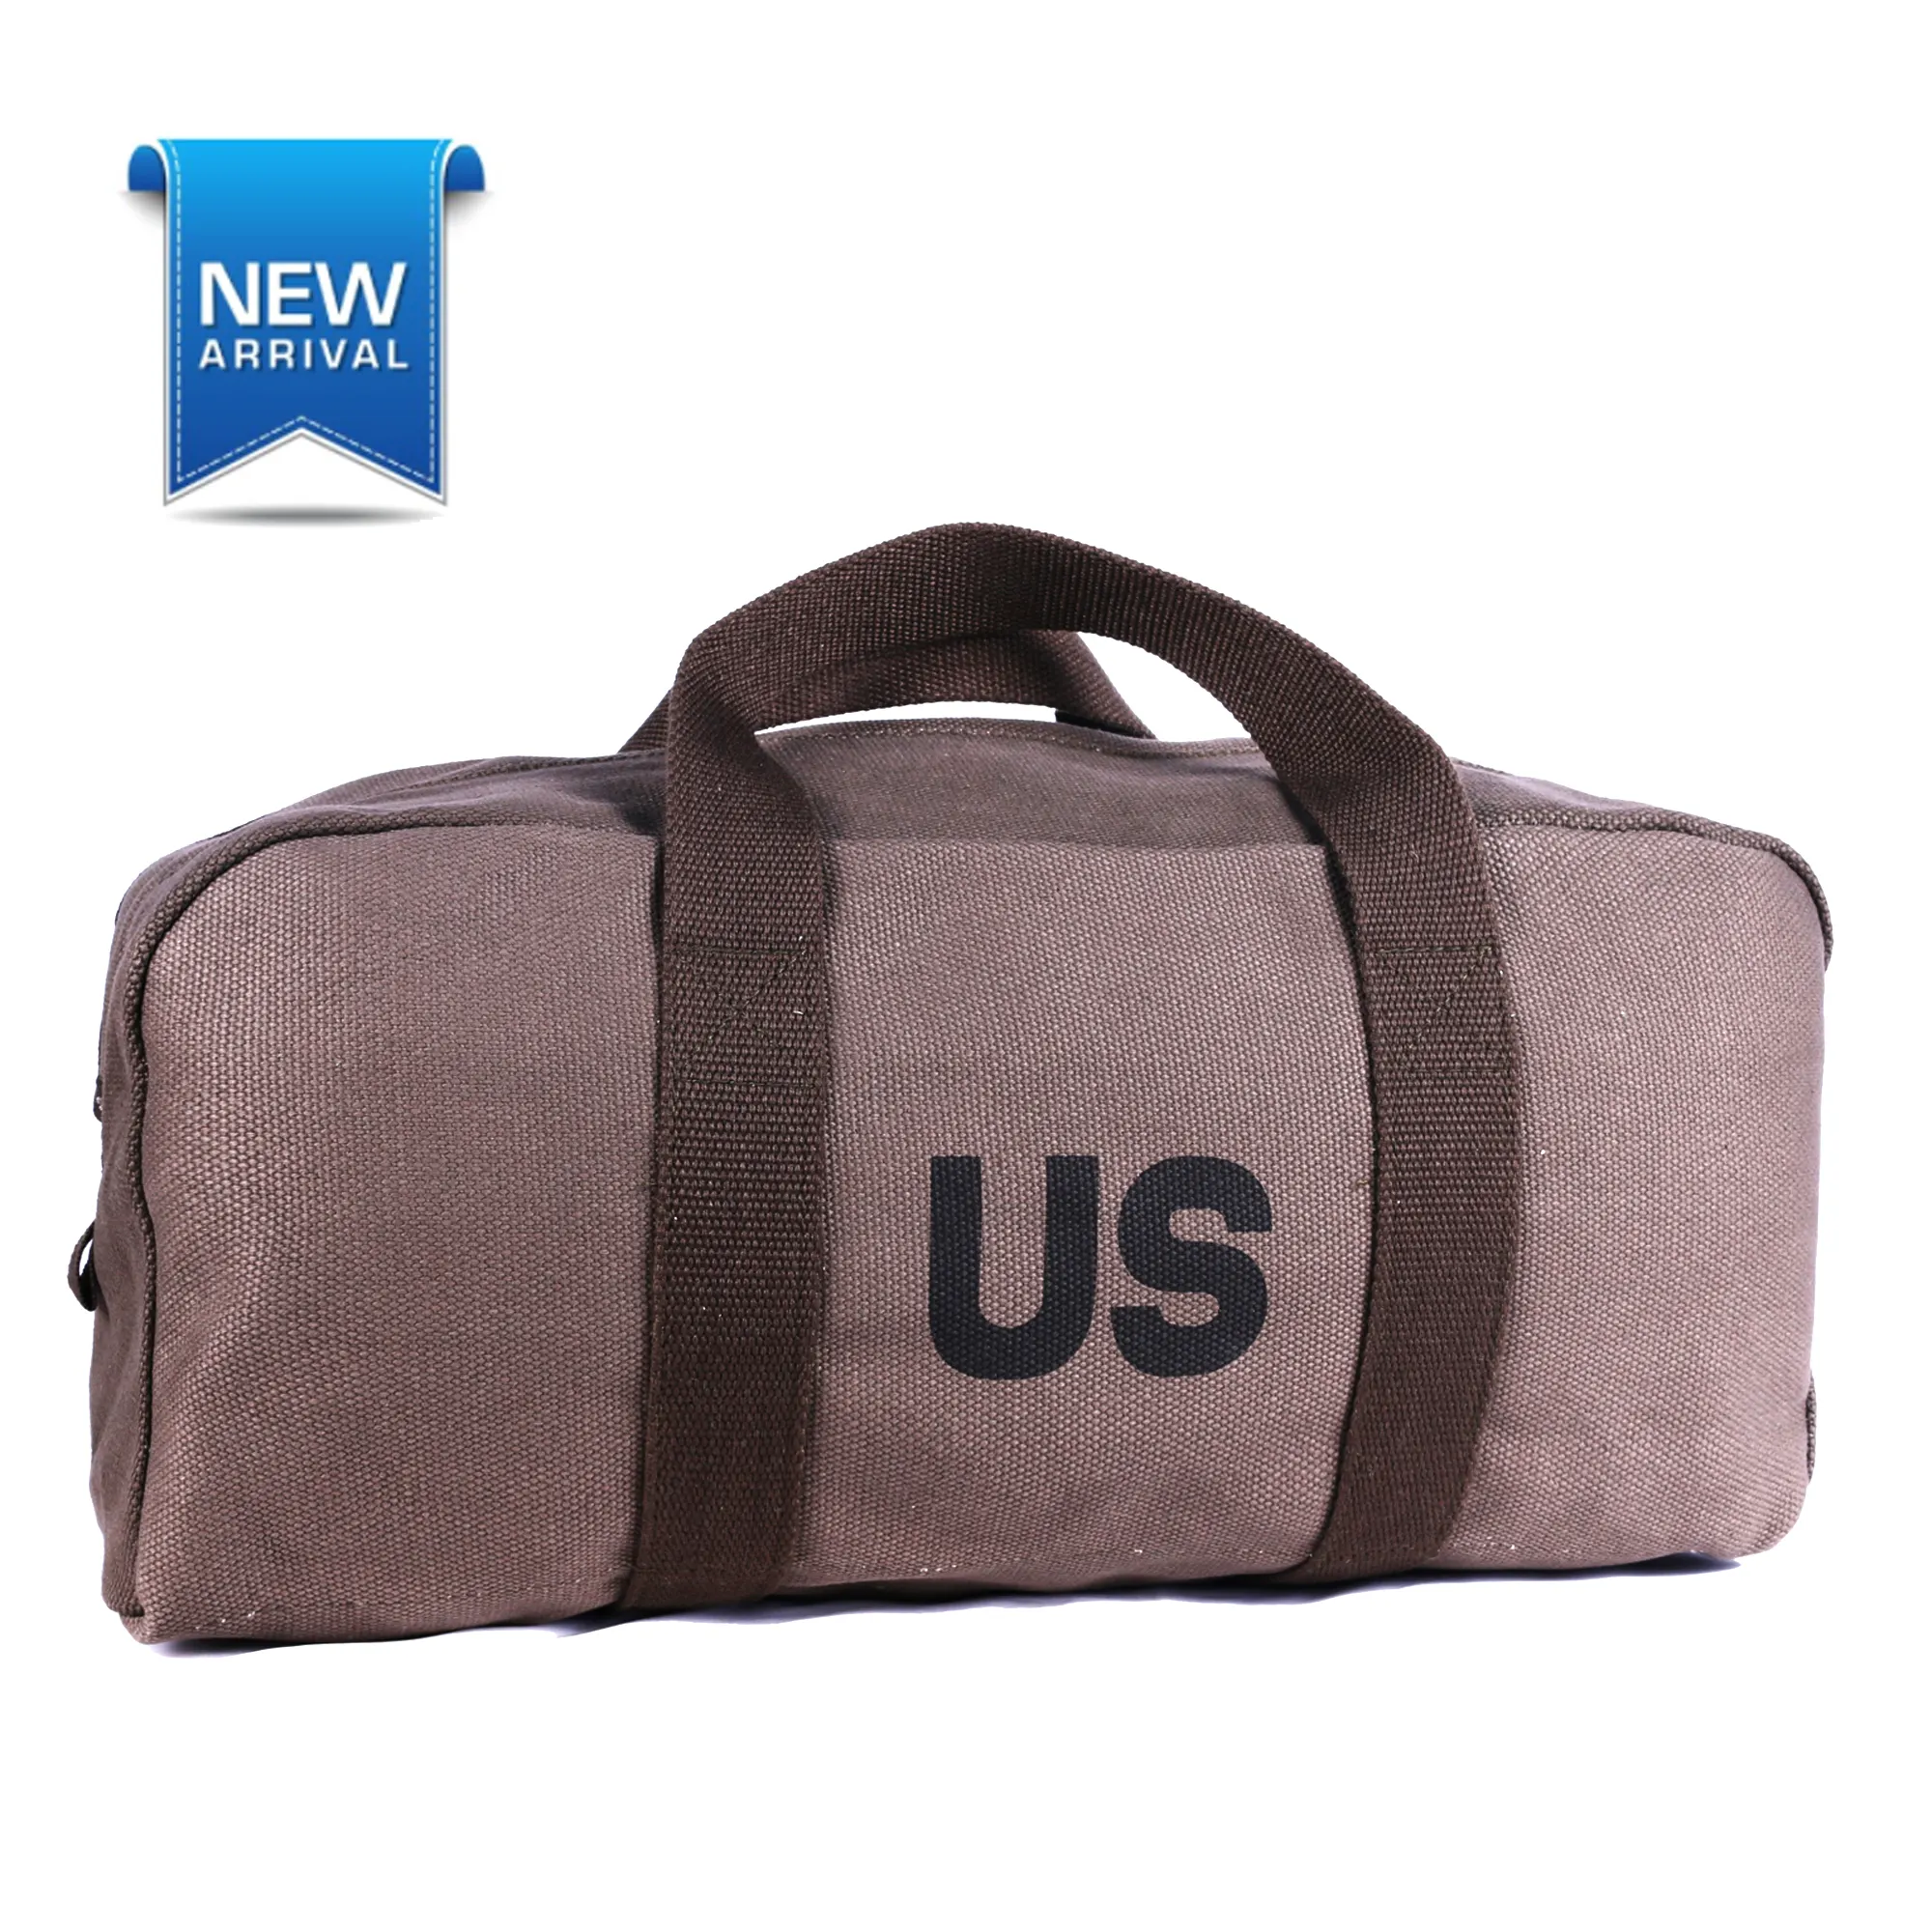 Bolsas de lona personalizadas, bolso de mano duradero, bolsa de viaje plegable